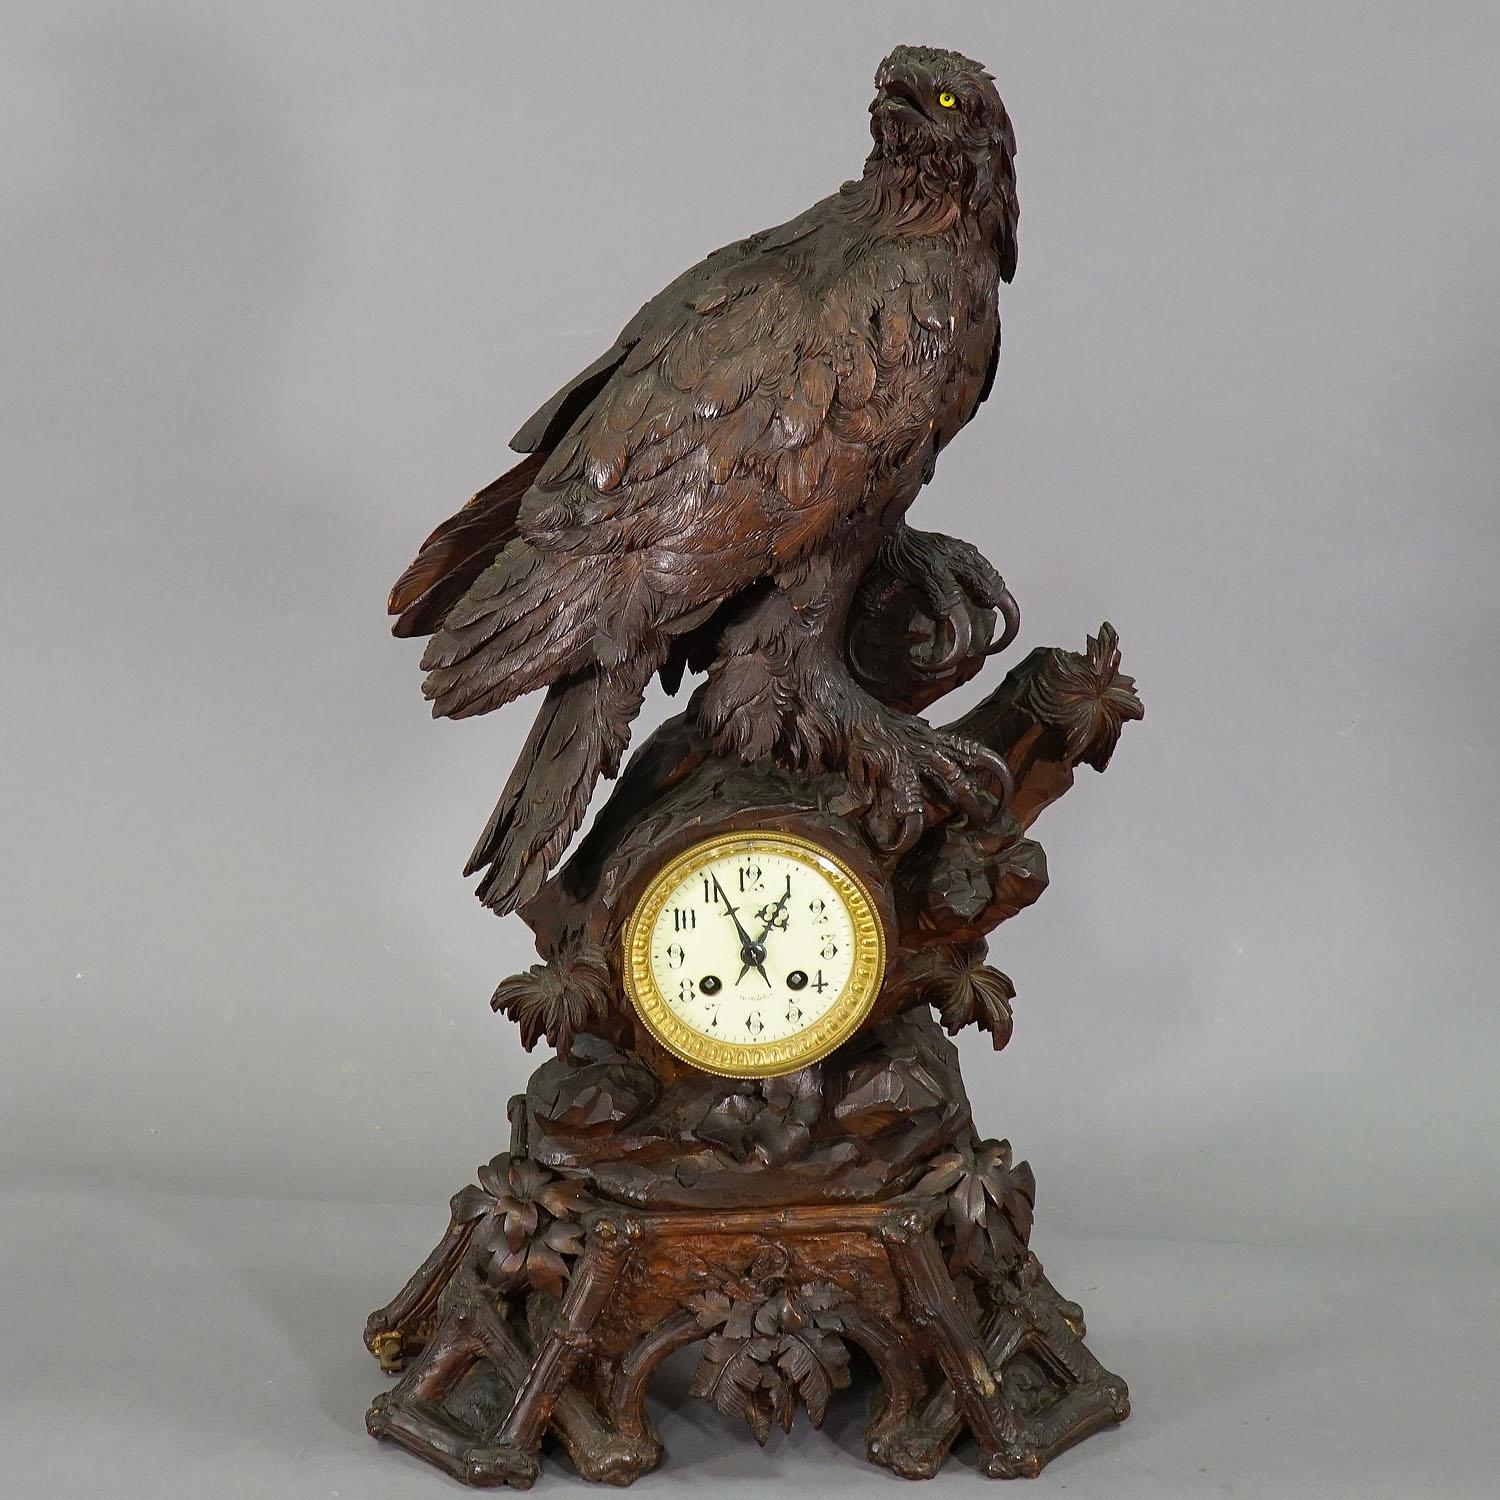 Pendule de cheminée ancienne en bois avec aigle, Suisse, 1900

Une superbe horloge de cheminée en bois de tilleul sculpté avec un aigle sculpté très détaillé assis sur un rocher avec des décorations de feuillage. Le cadran en porcelaine a des